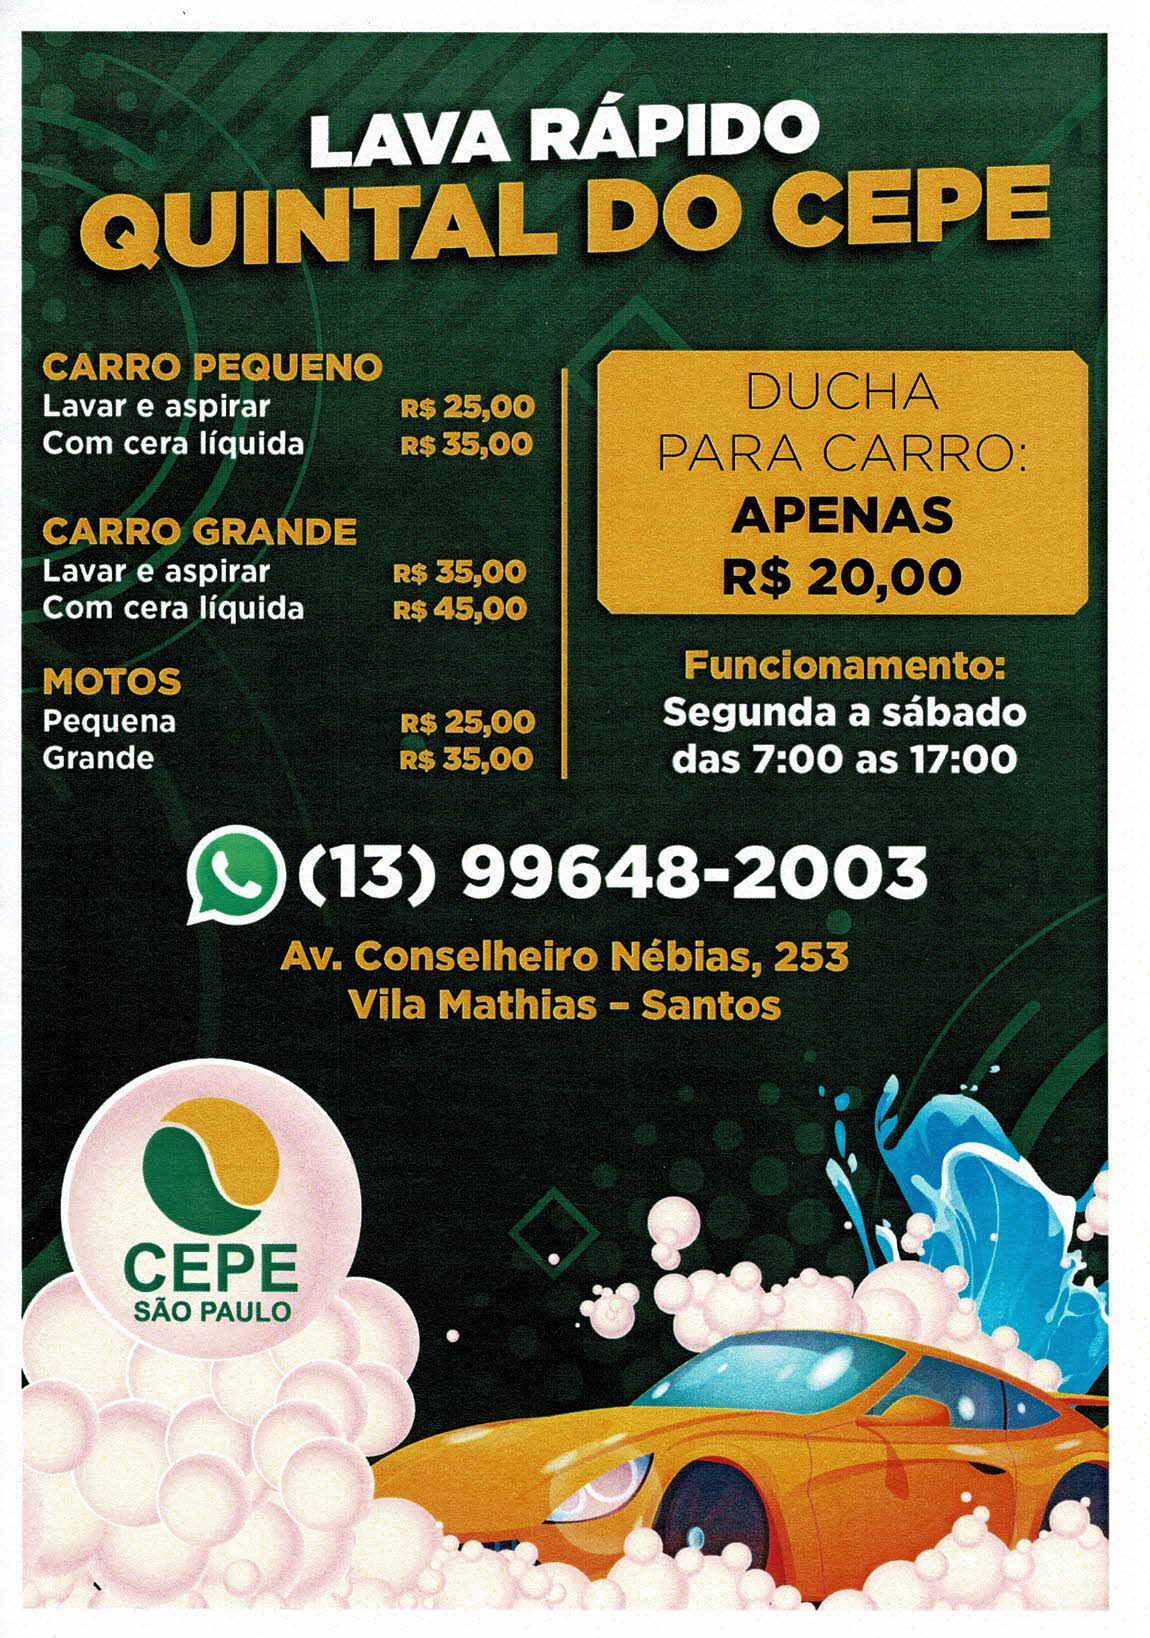 Espao Cepe Santos agora conta com servio de lava rpido Quintal do Cepe para carros e motos